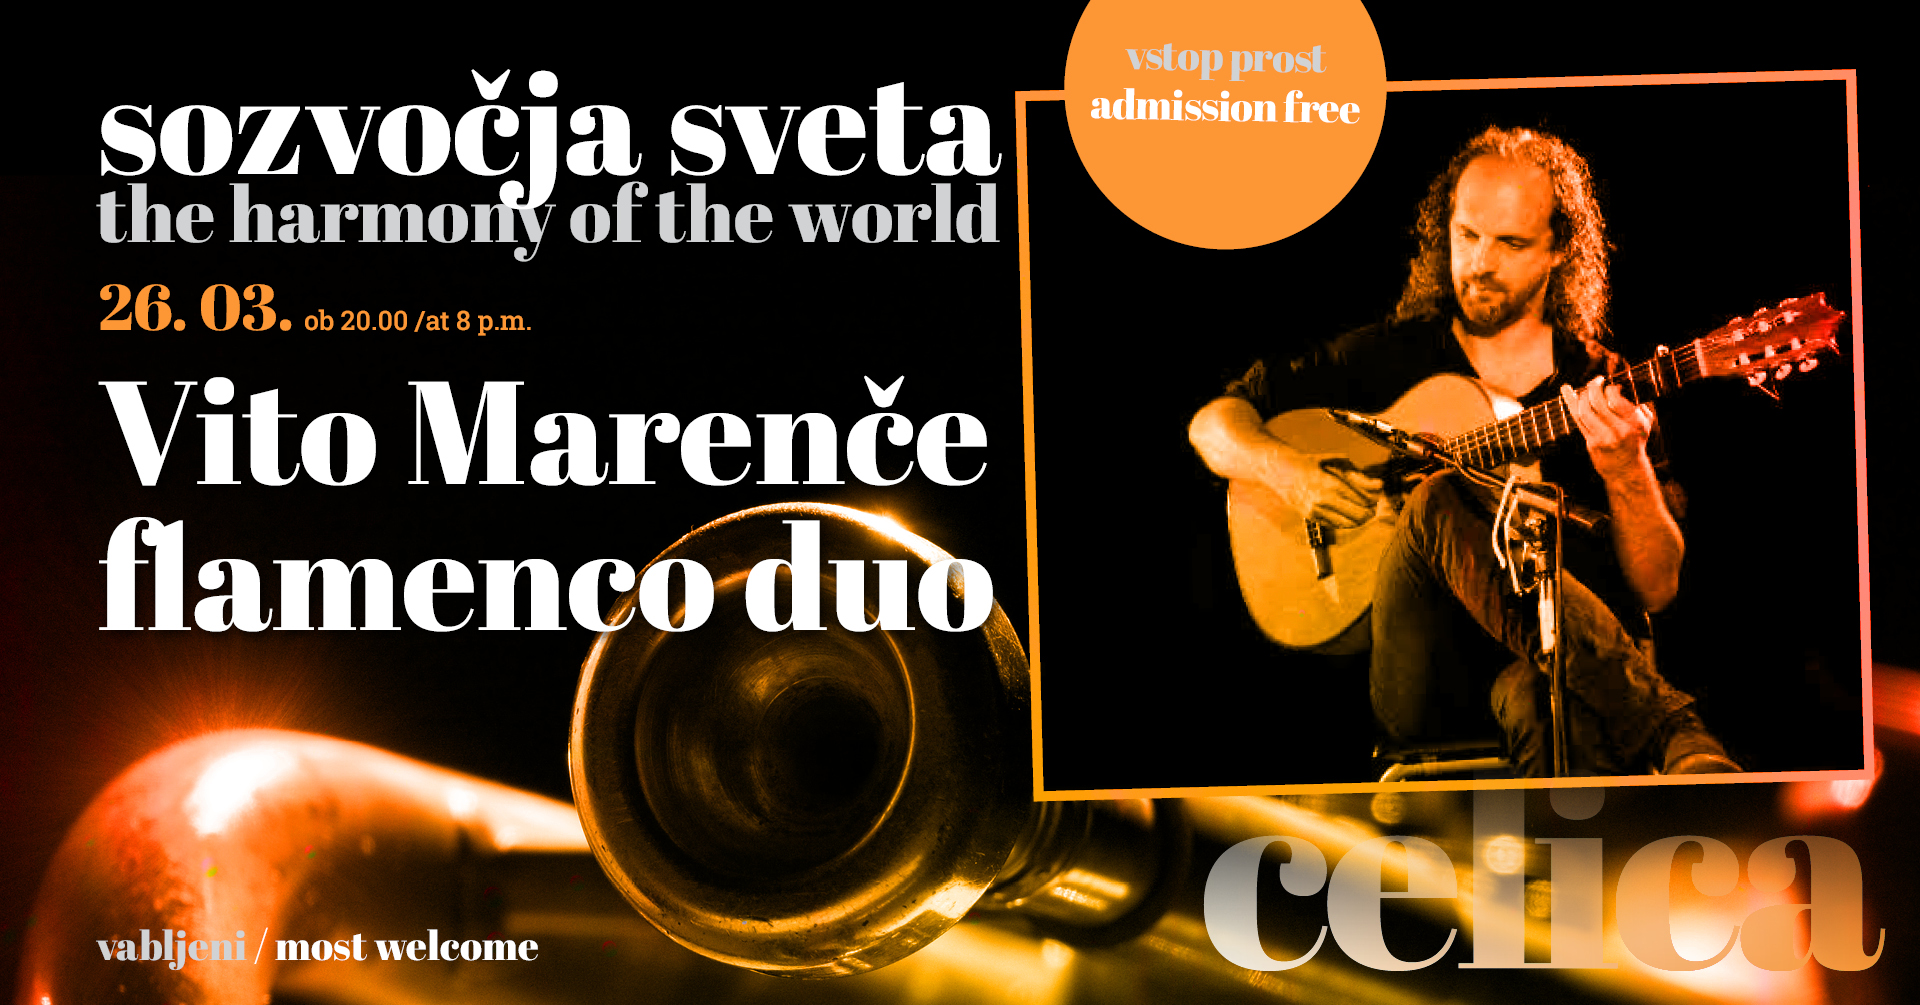 Sozvočja sveta: Vito Marenče flamenco duo